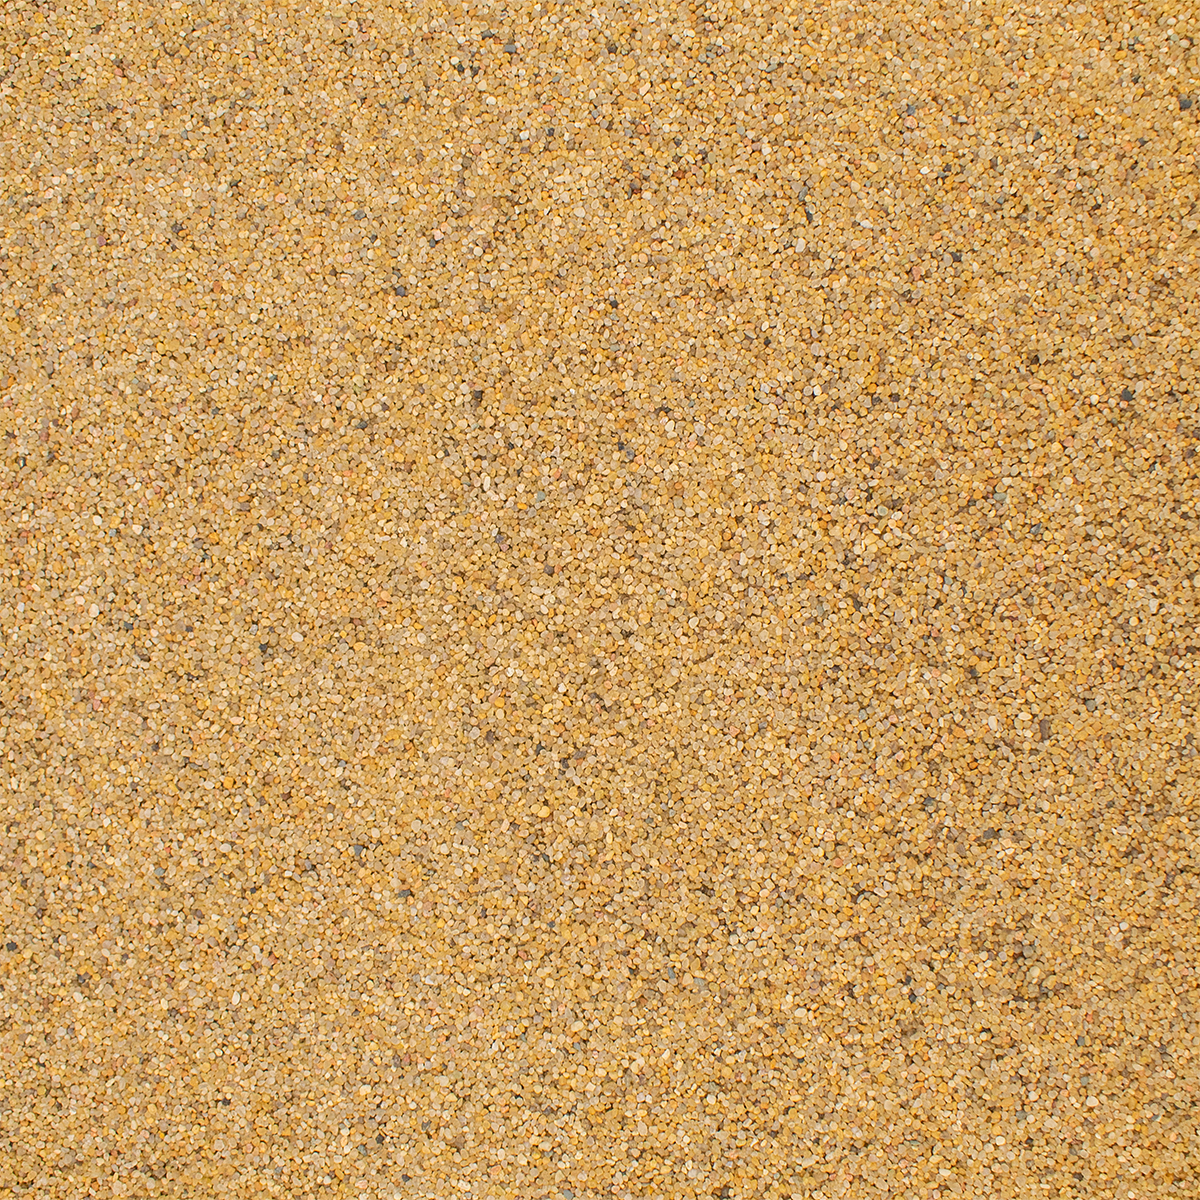 Грунт для аквариума NOVAMARK HARDSCAPING Янтарный песок 0,8-1,4 мм (River Amber), 6л